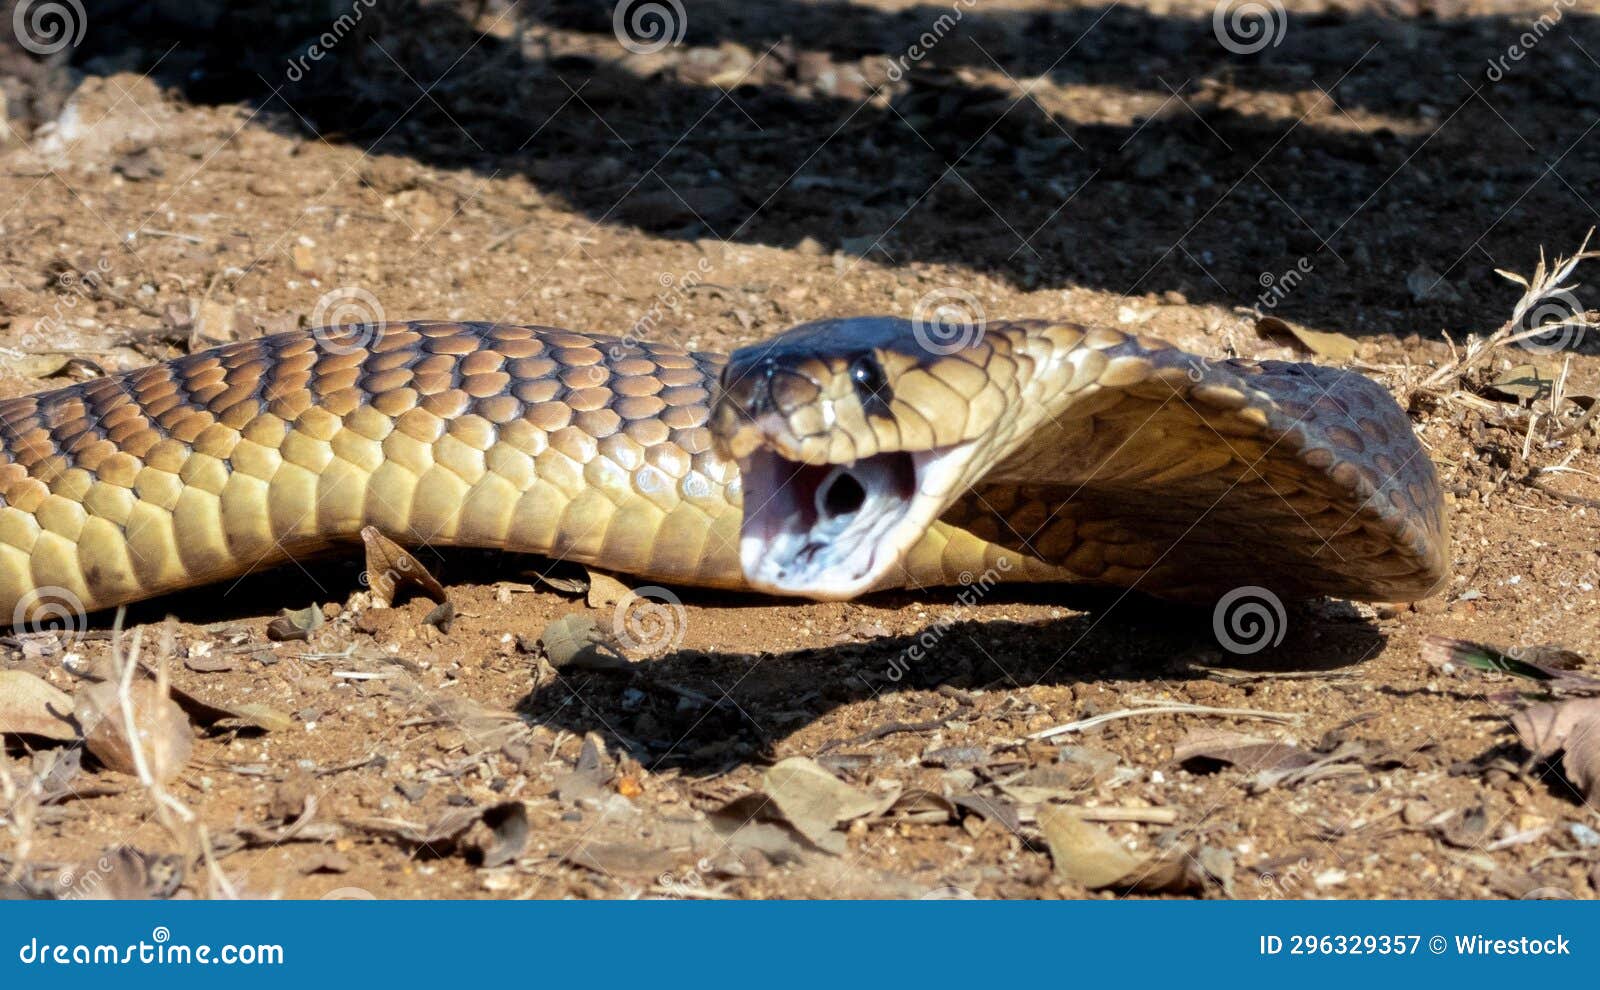 cobra mouth open - Google zoeken